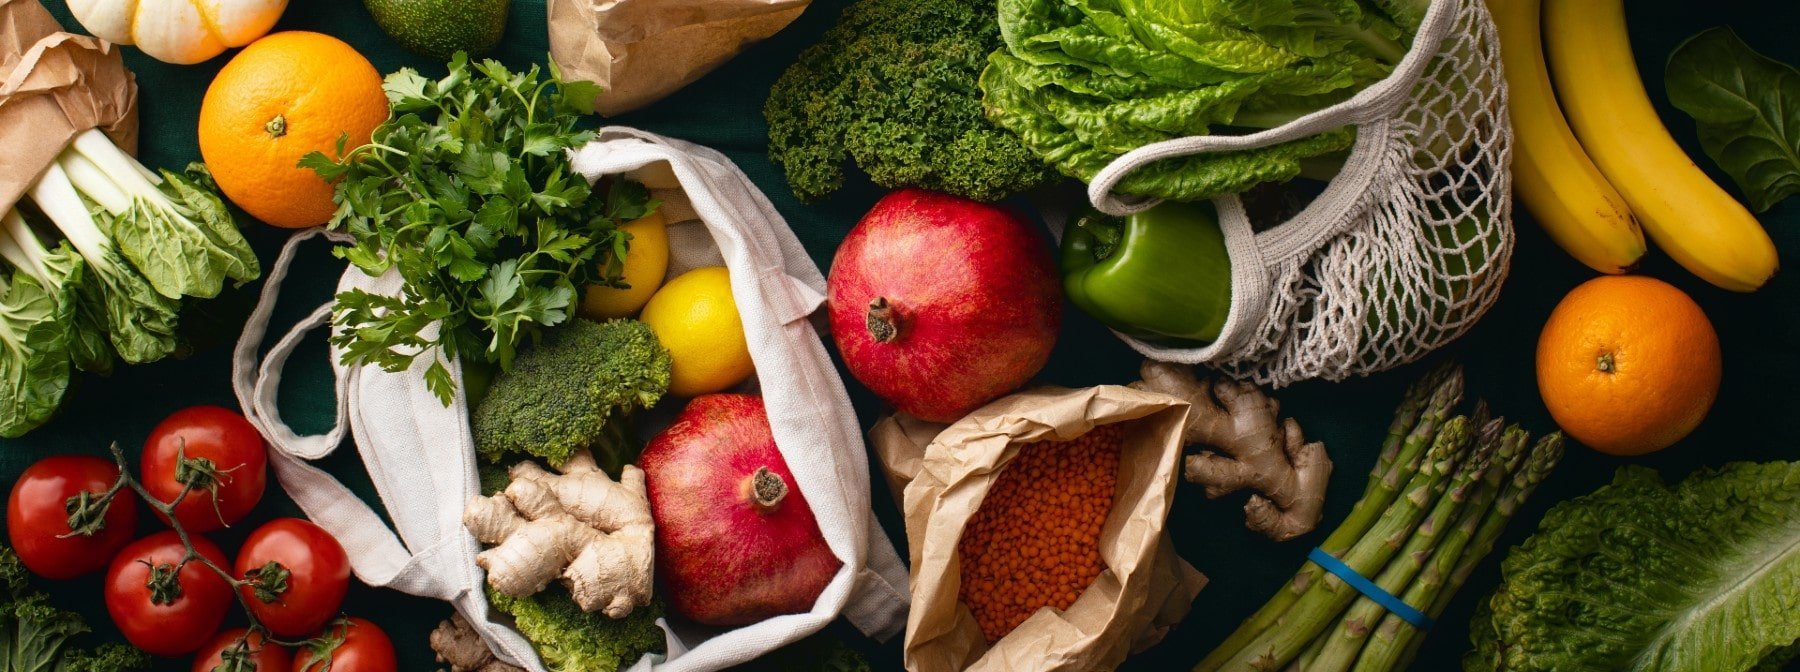 7 Surprising Benefits Of A Vegan Diet